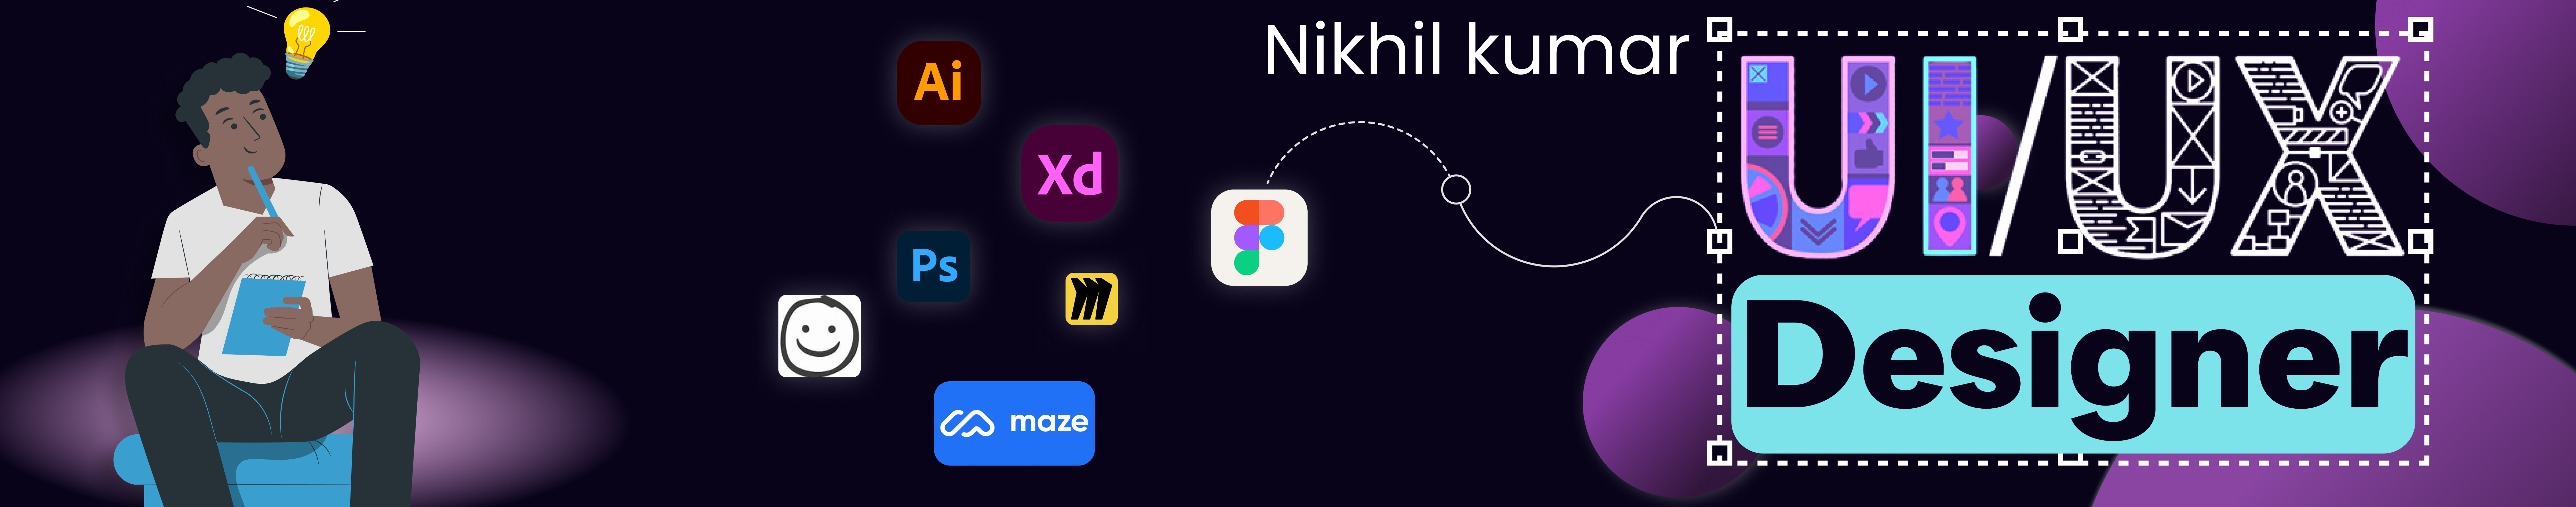 nikhil kumar's profile banner